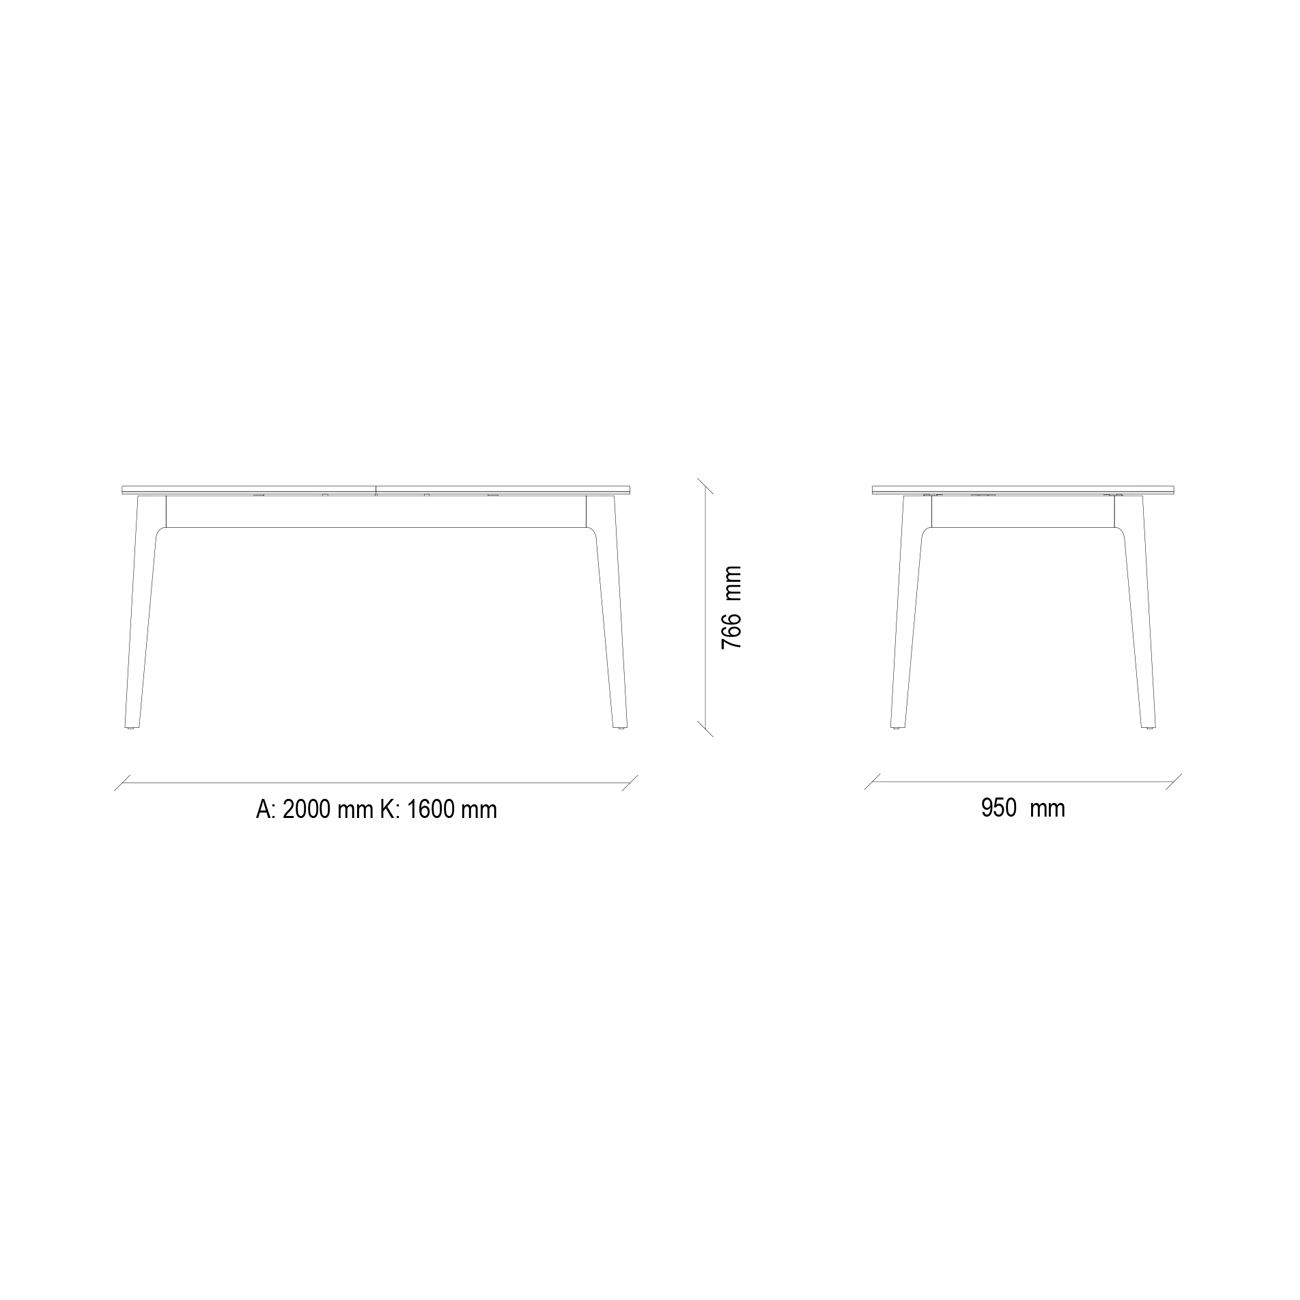 Стол обеденный Enza Home Raum, прямоугольный, раздвижной, размер 160(200)х95х76 см07.182.0538.0000.0173.0000.